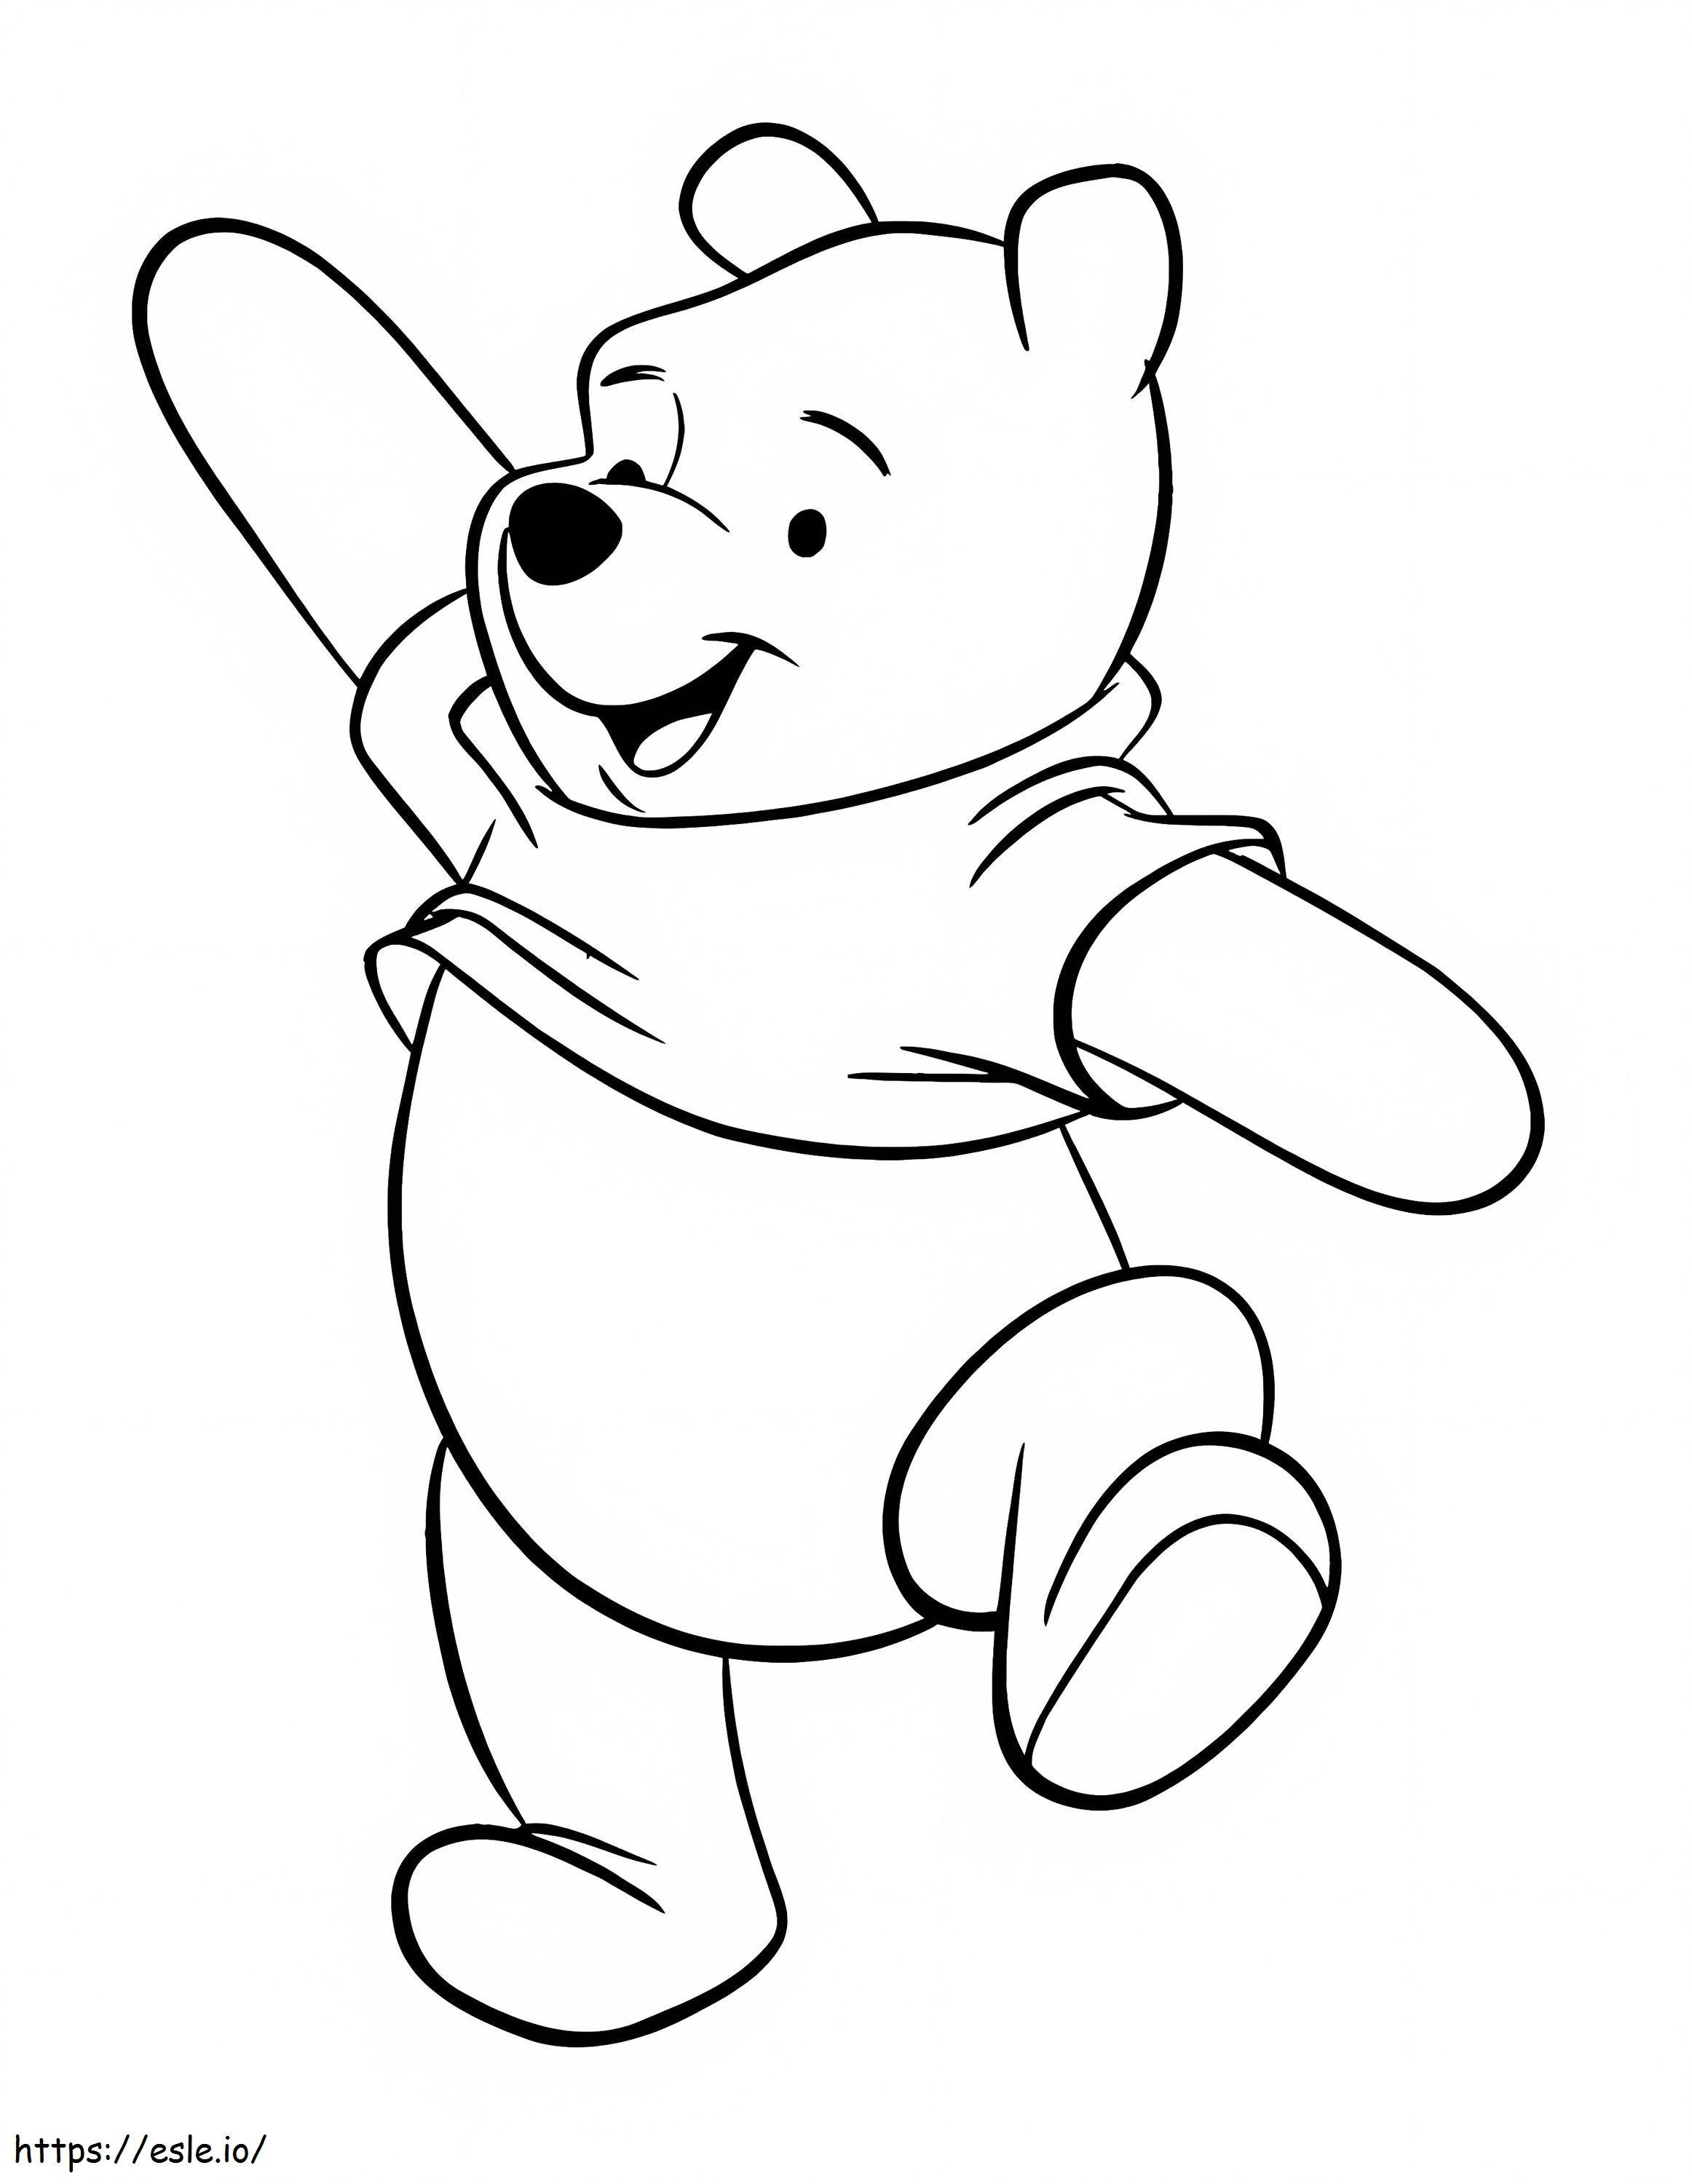 Série de TV do Ursinho Pooh Imagens para colorir Idéias para fotos Páginas Personagens Citações em escala 1 para colorir